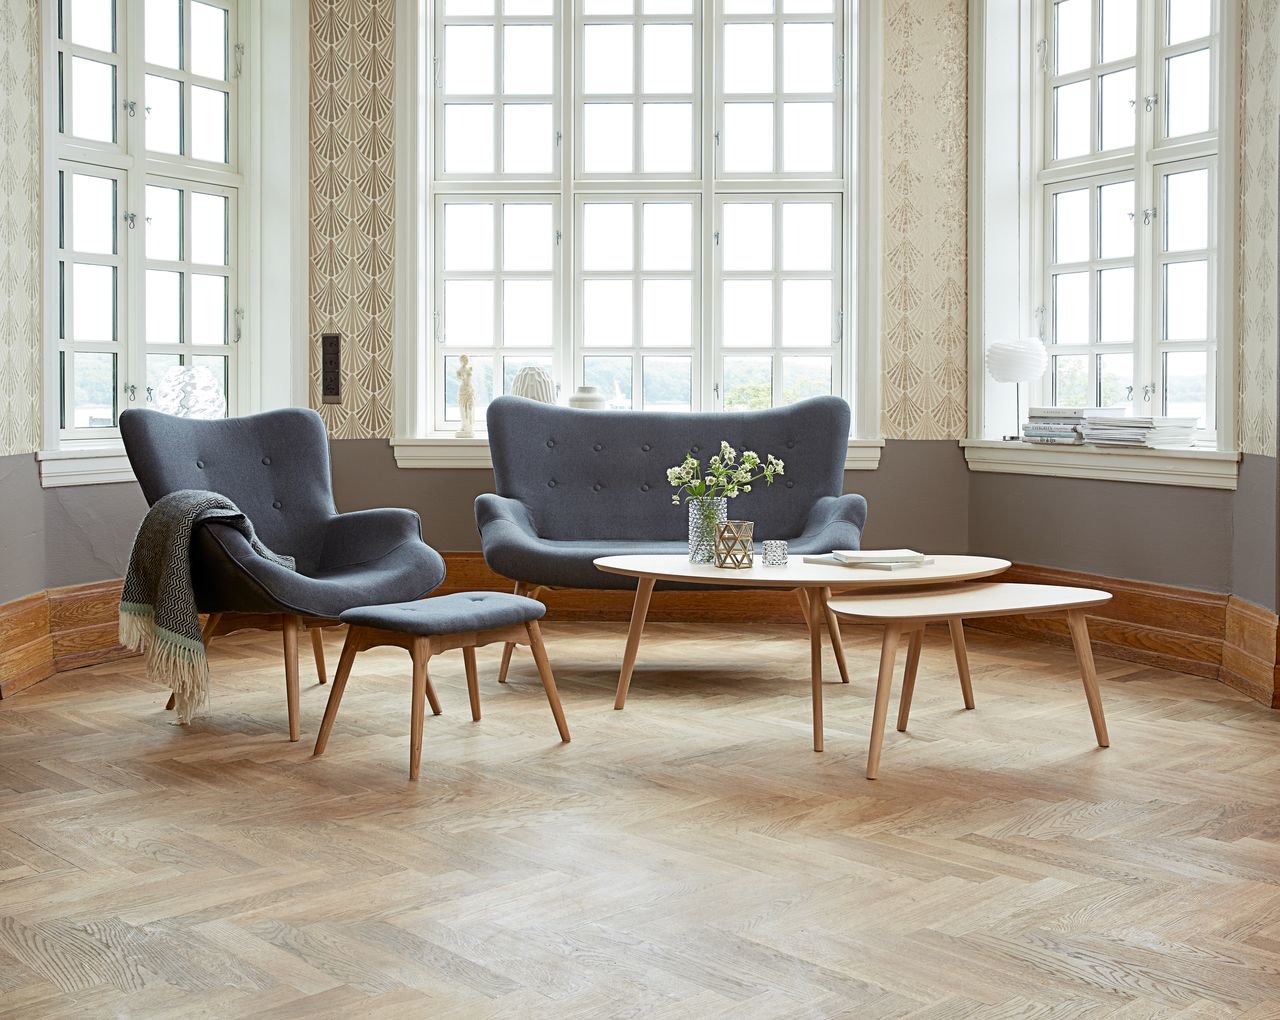 Chất liệu gỗ công nghiệp mang lại sự ấm cúng cho không gian trong decor nội thất